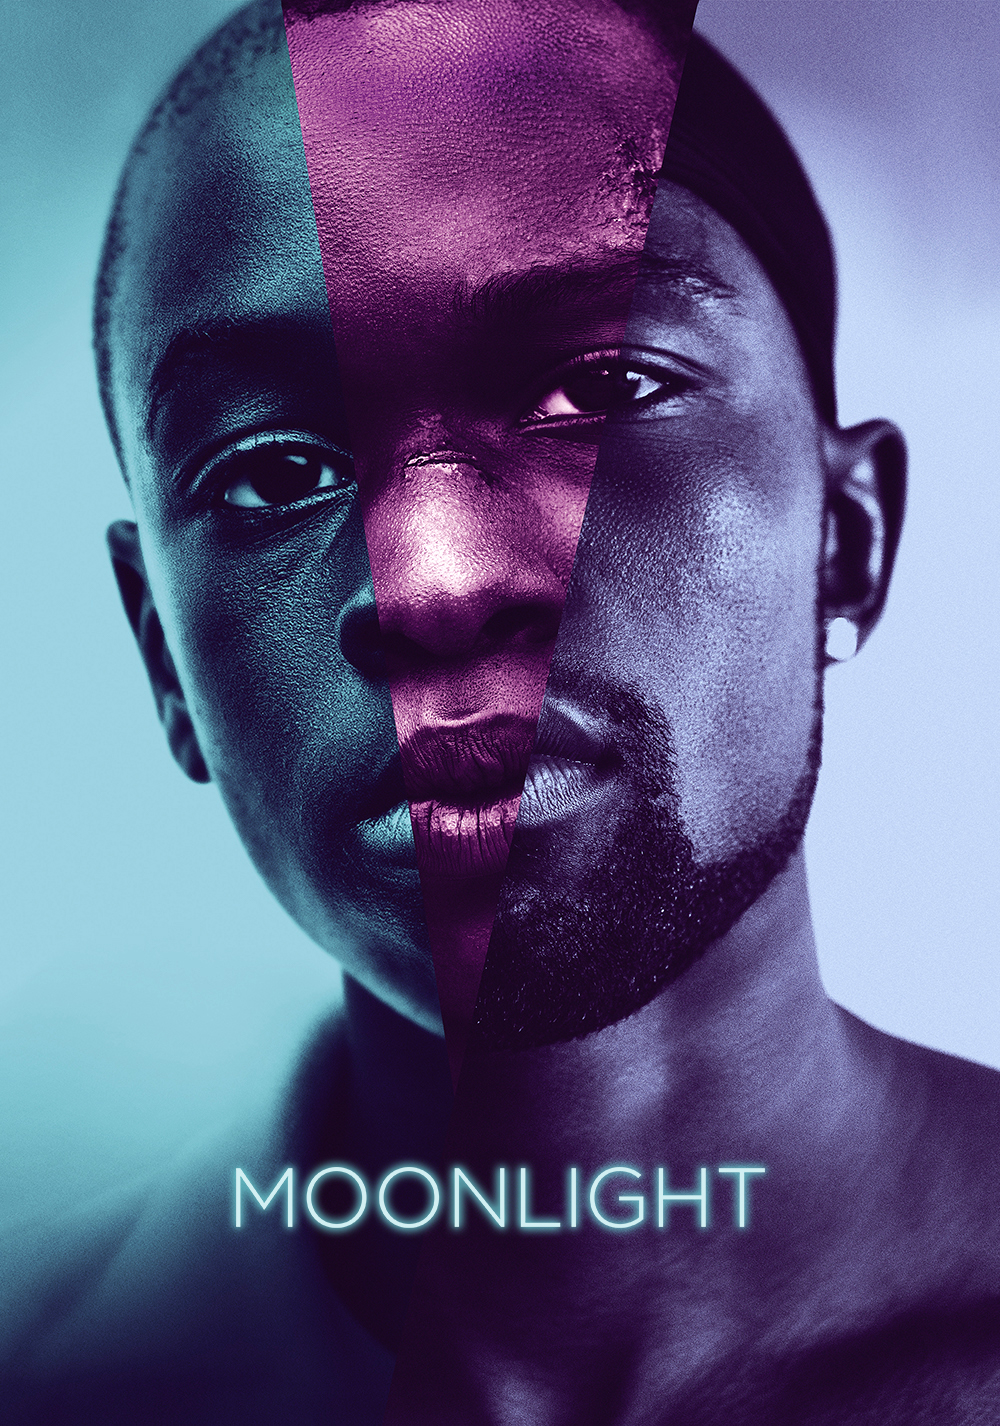 Moonlight poster from https://fanart.tv